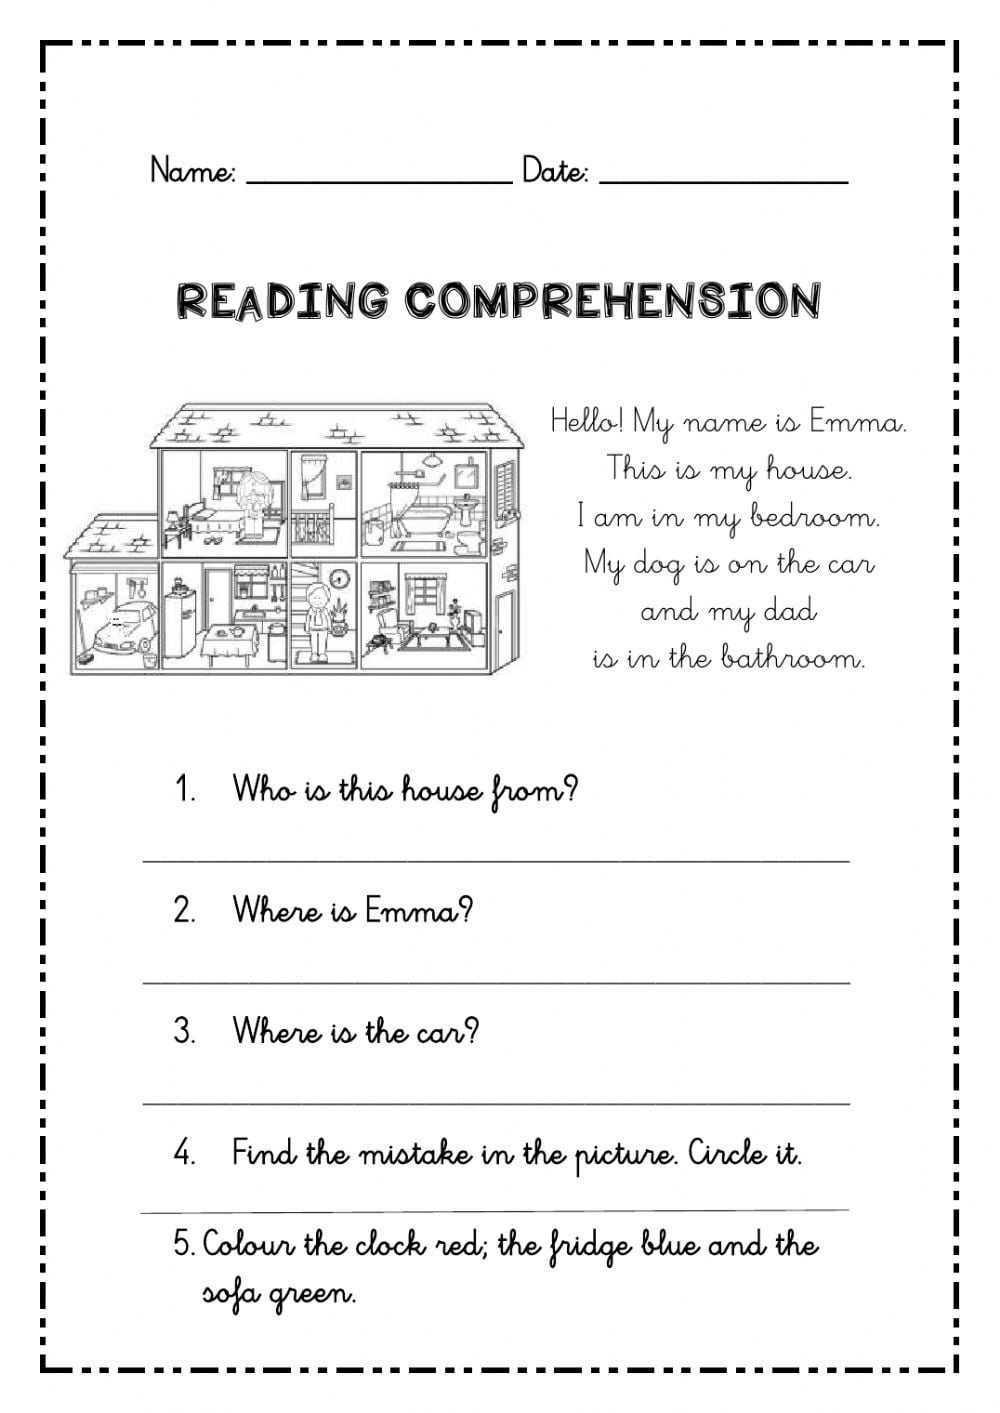 Reading Comprehension For 2nd Grade Worksheets